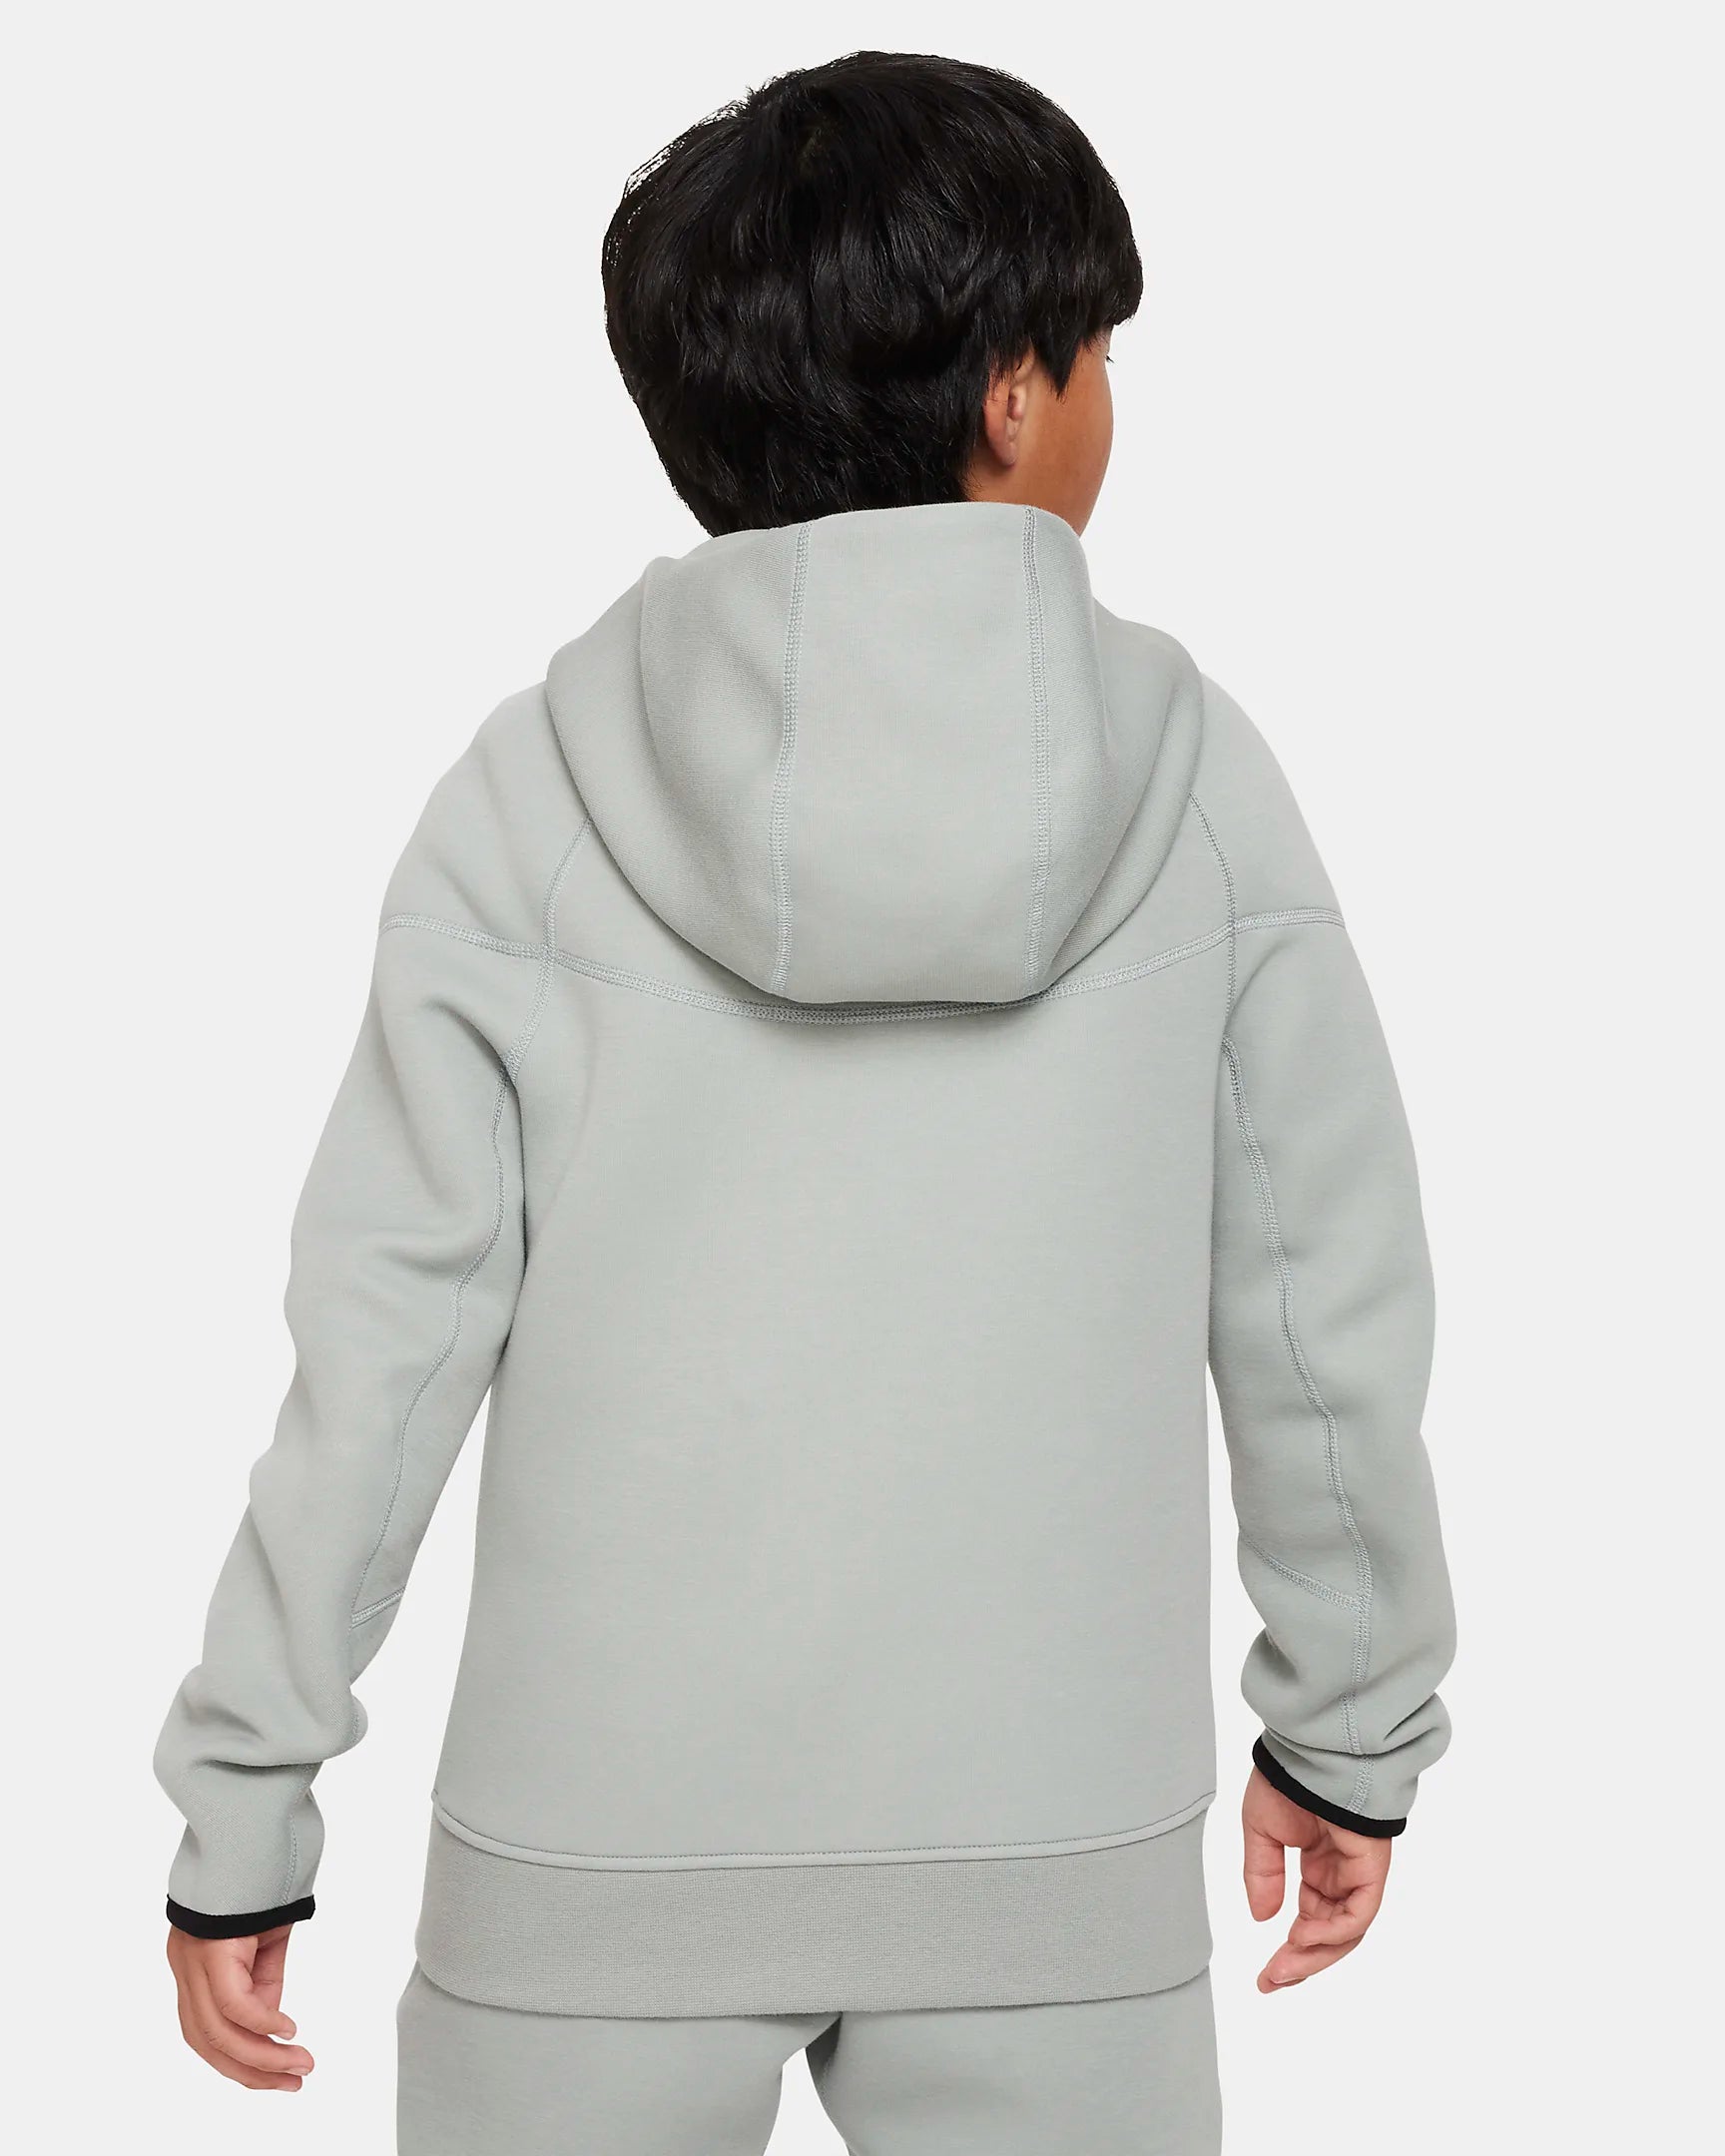 Nike Grey Sportswear Tech Fleece Hoodie